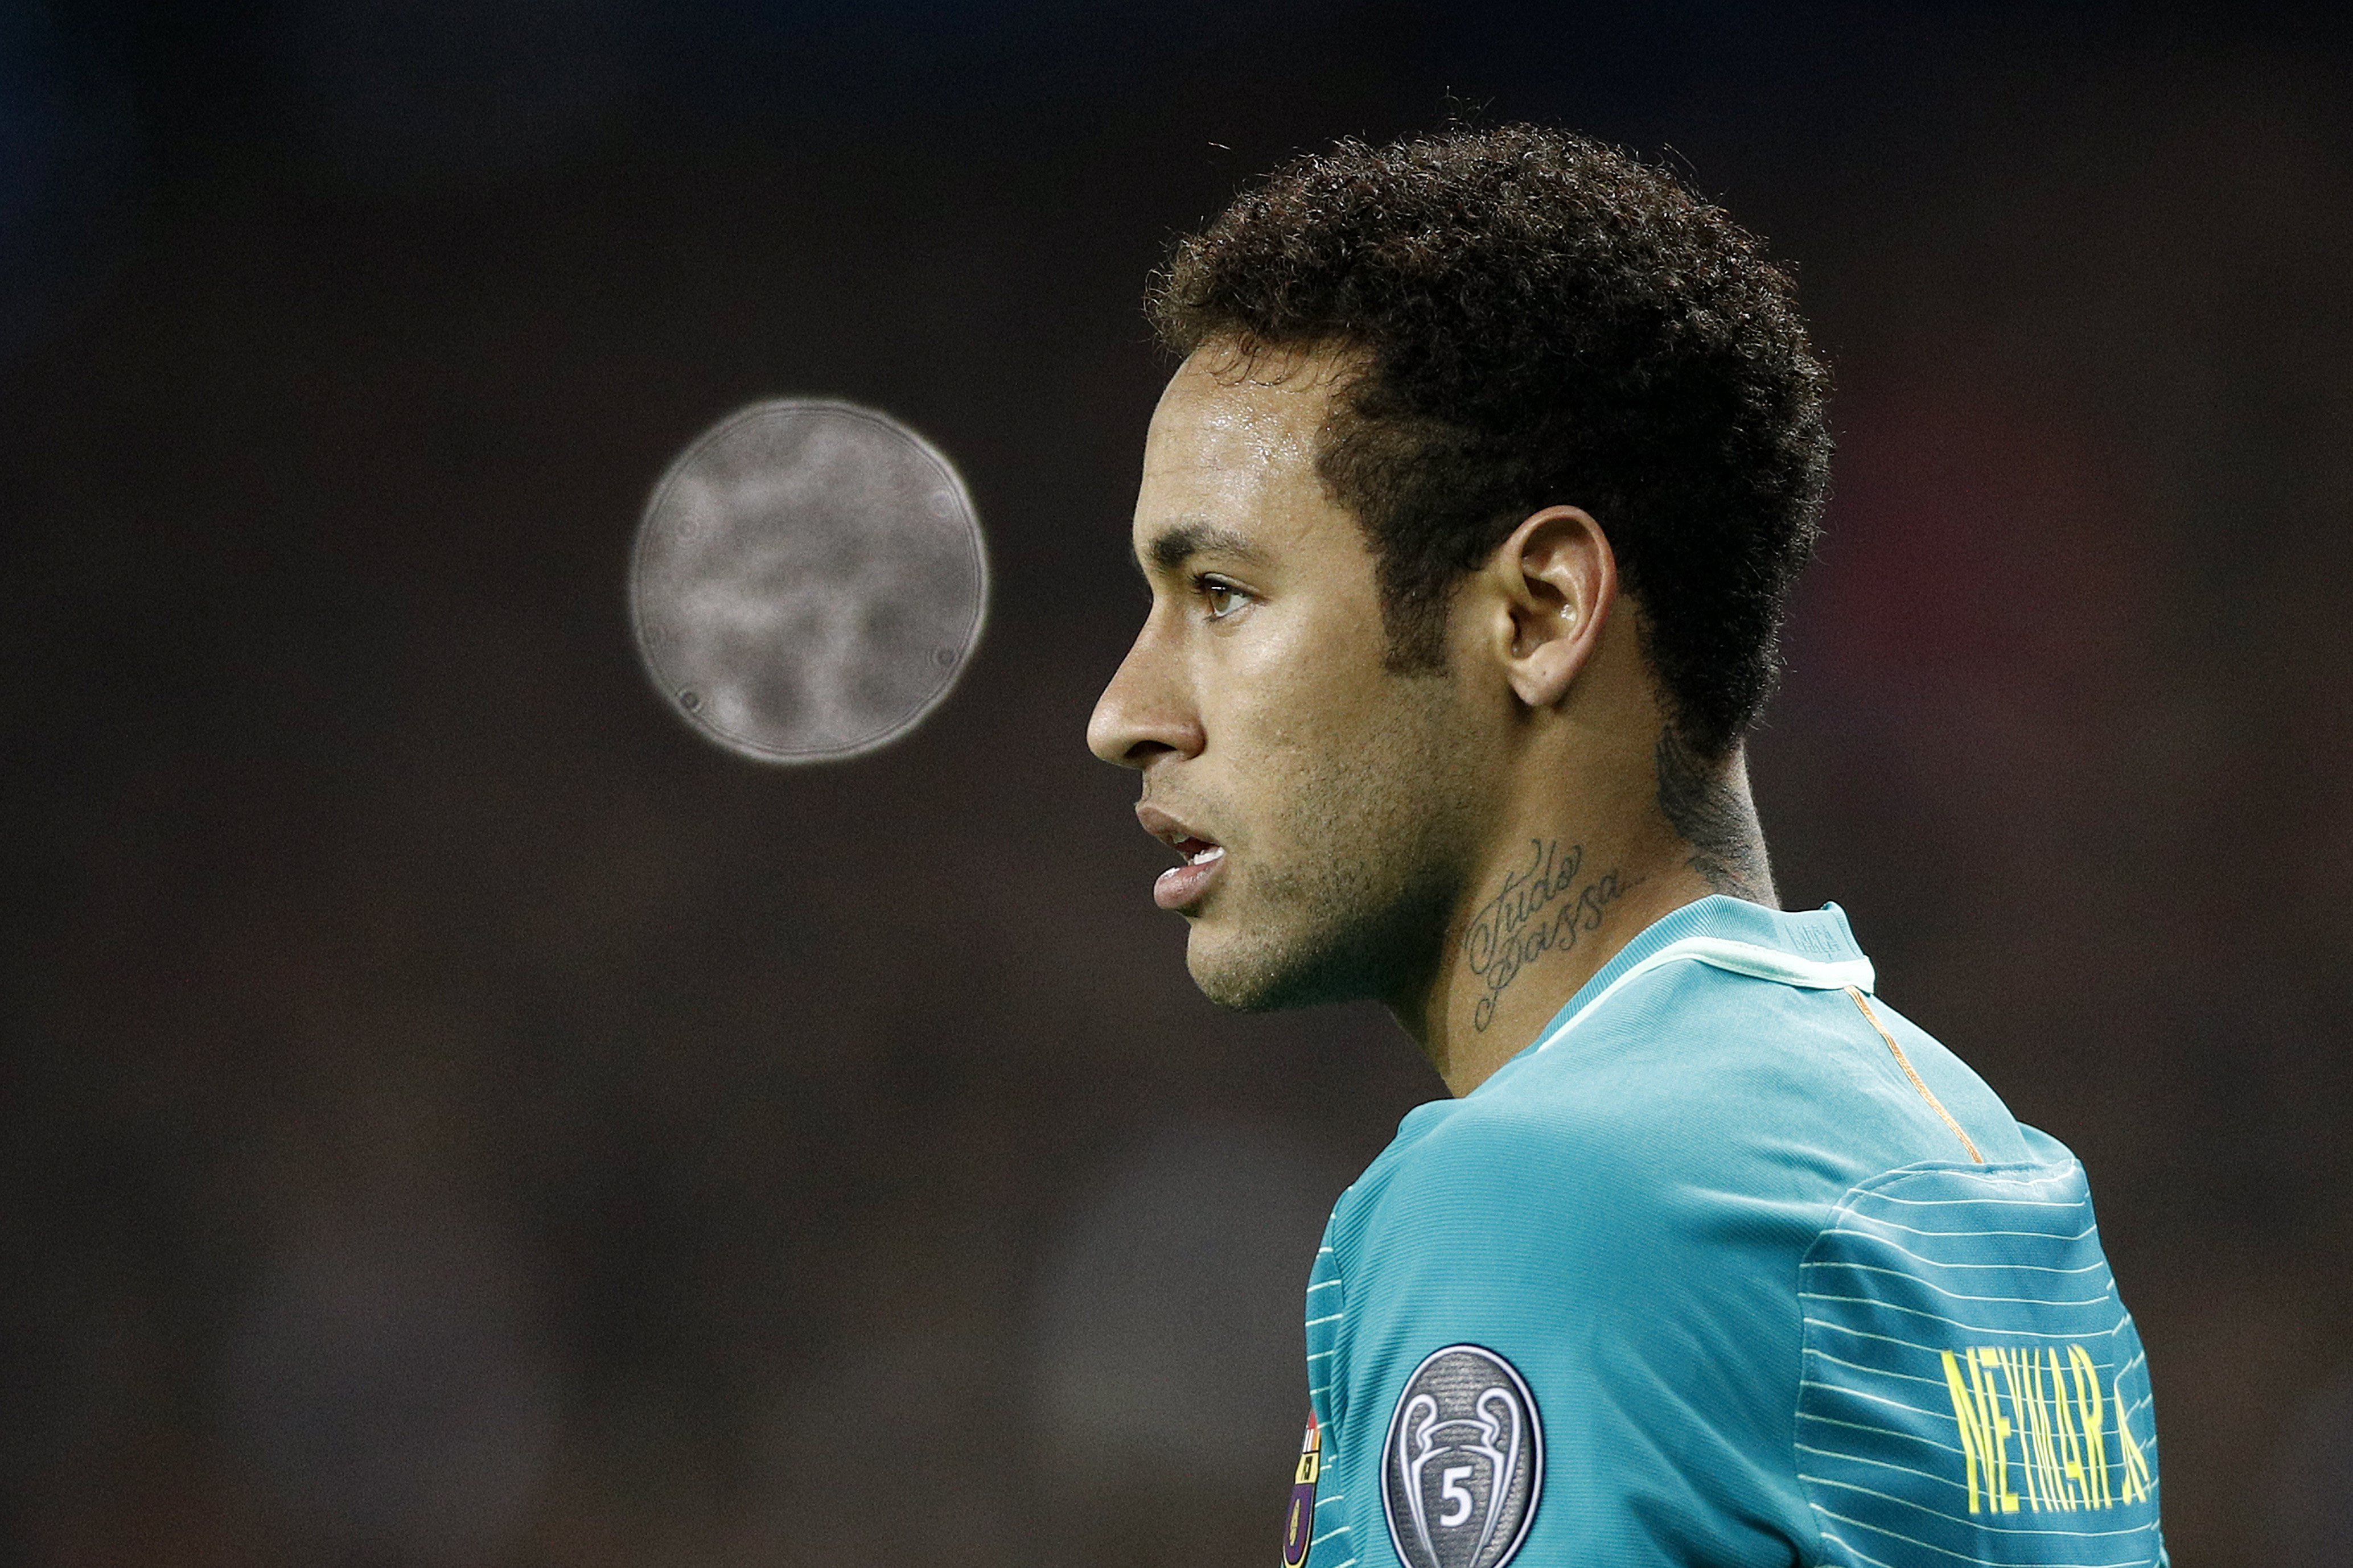 La Audiencia Nacional confirma el juicio del Barça por estafa en el fichaje de Neymar